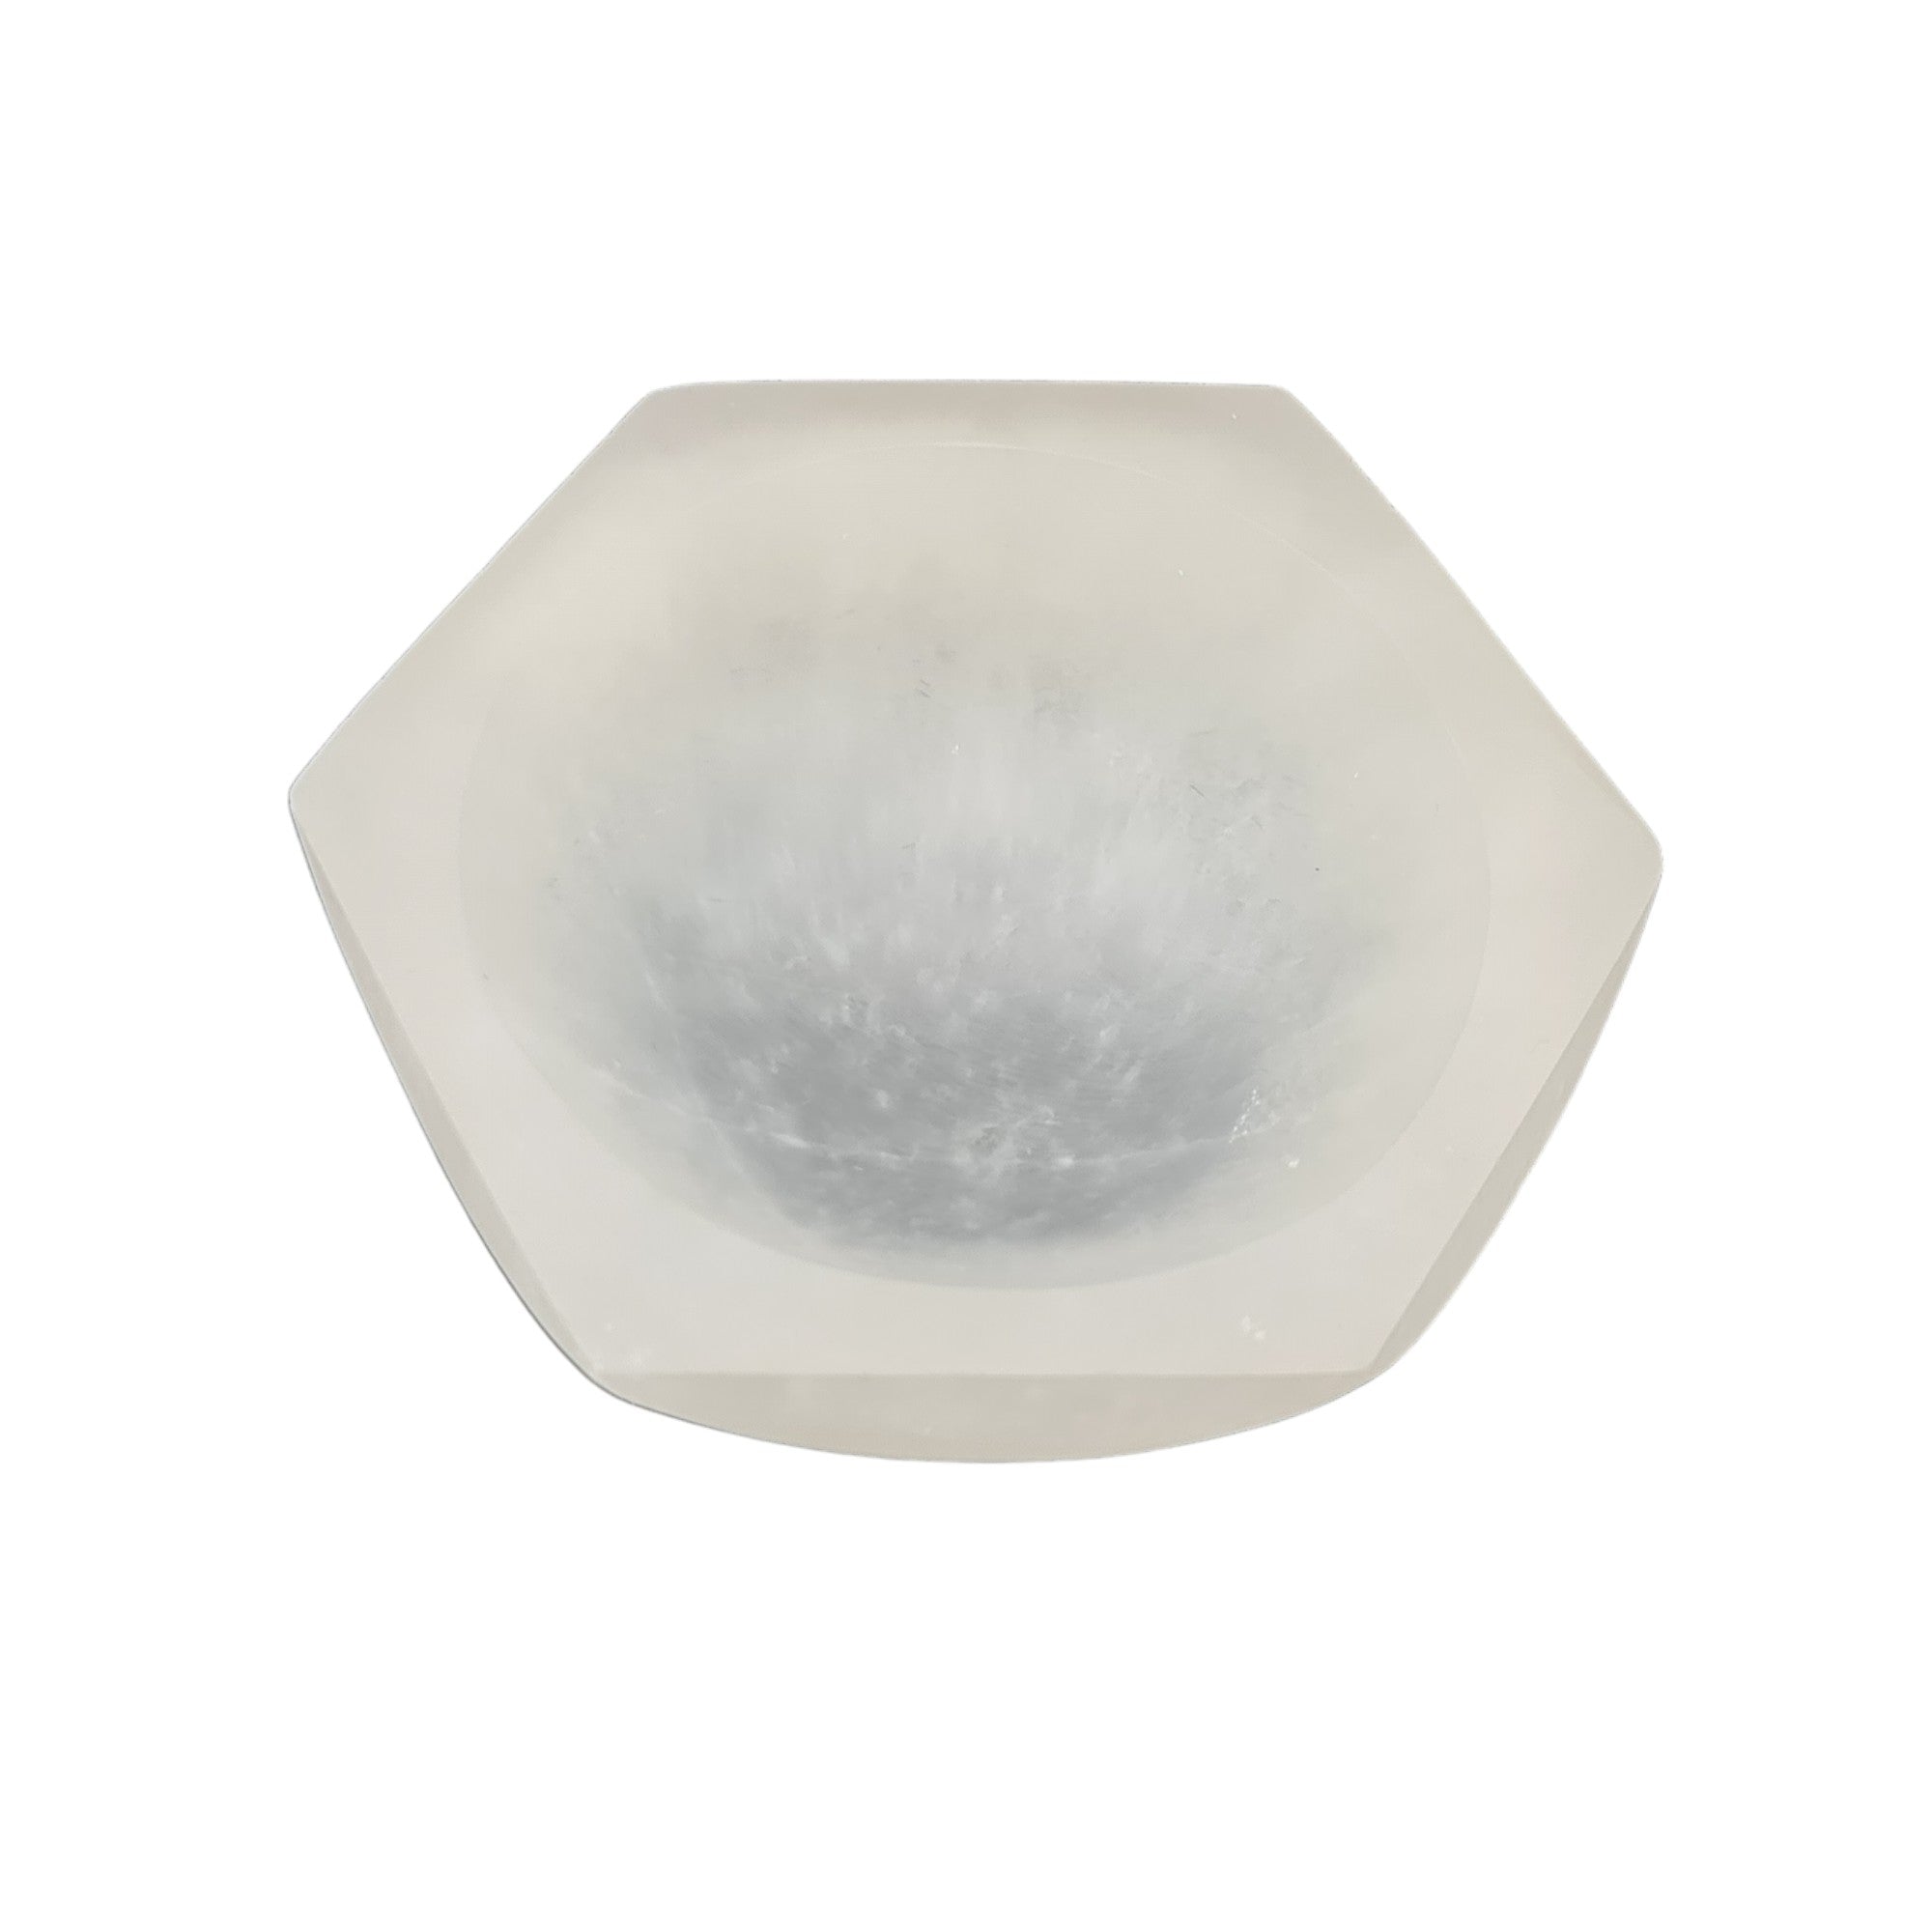 Selenite Charging Bowl - Hexagon